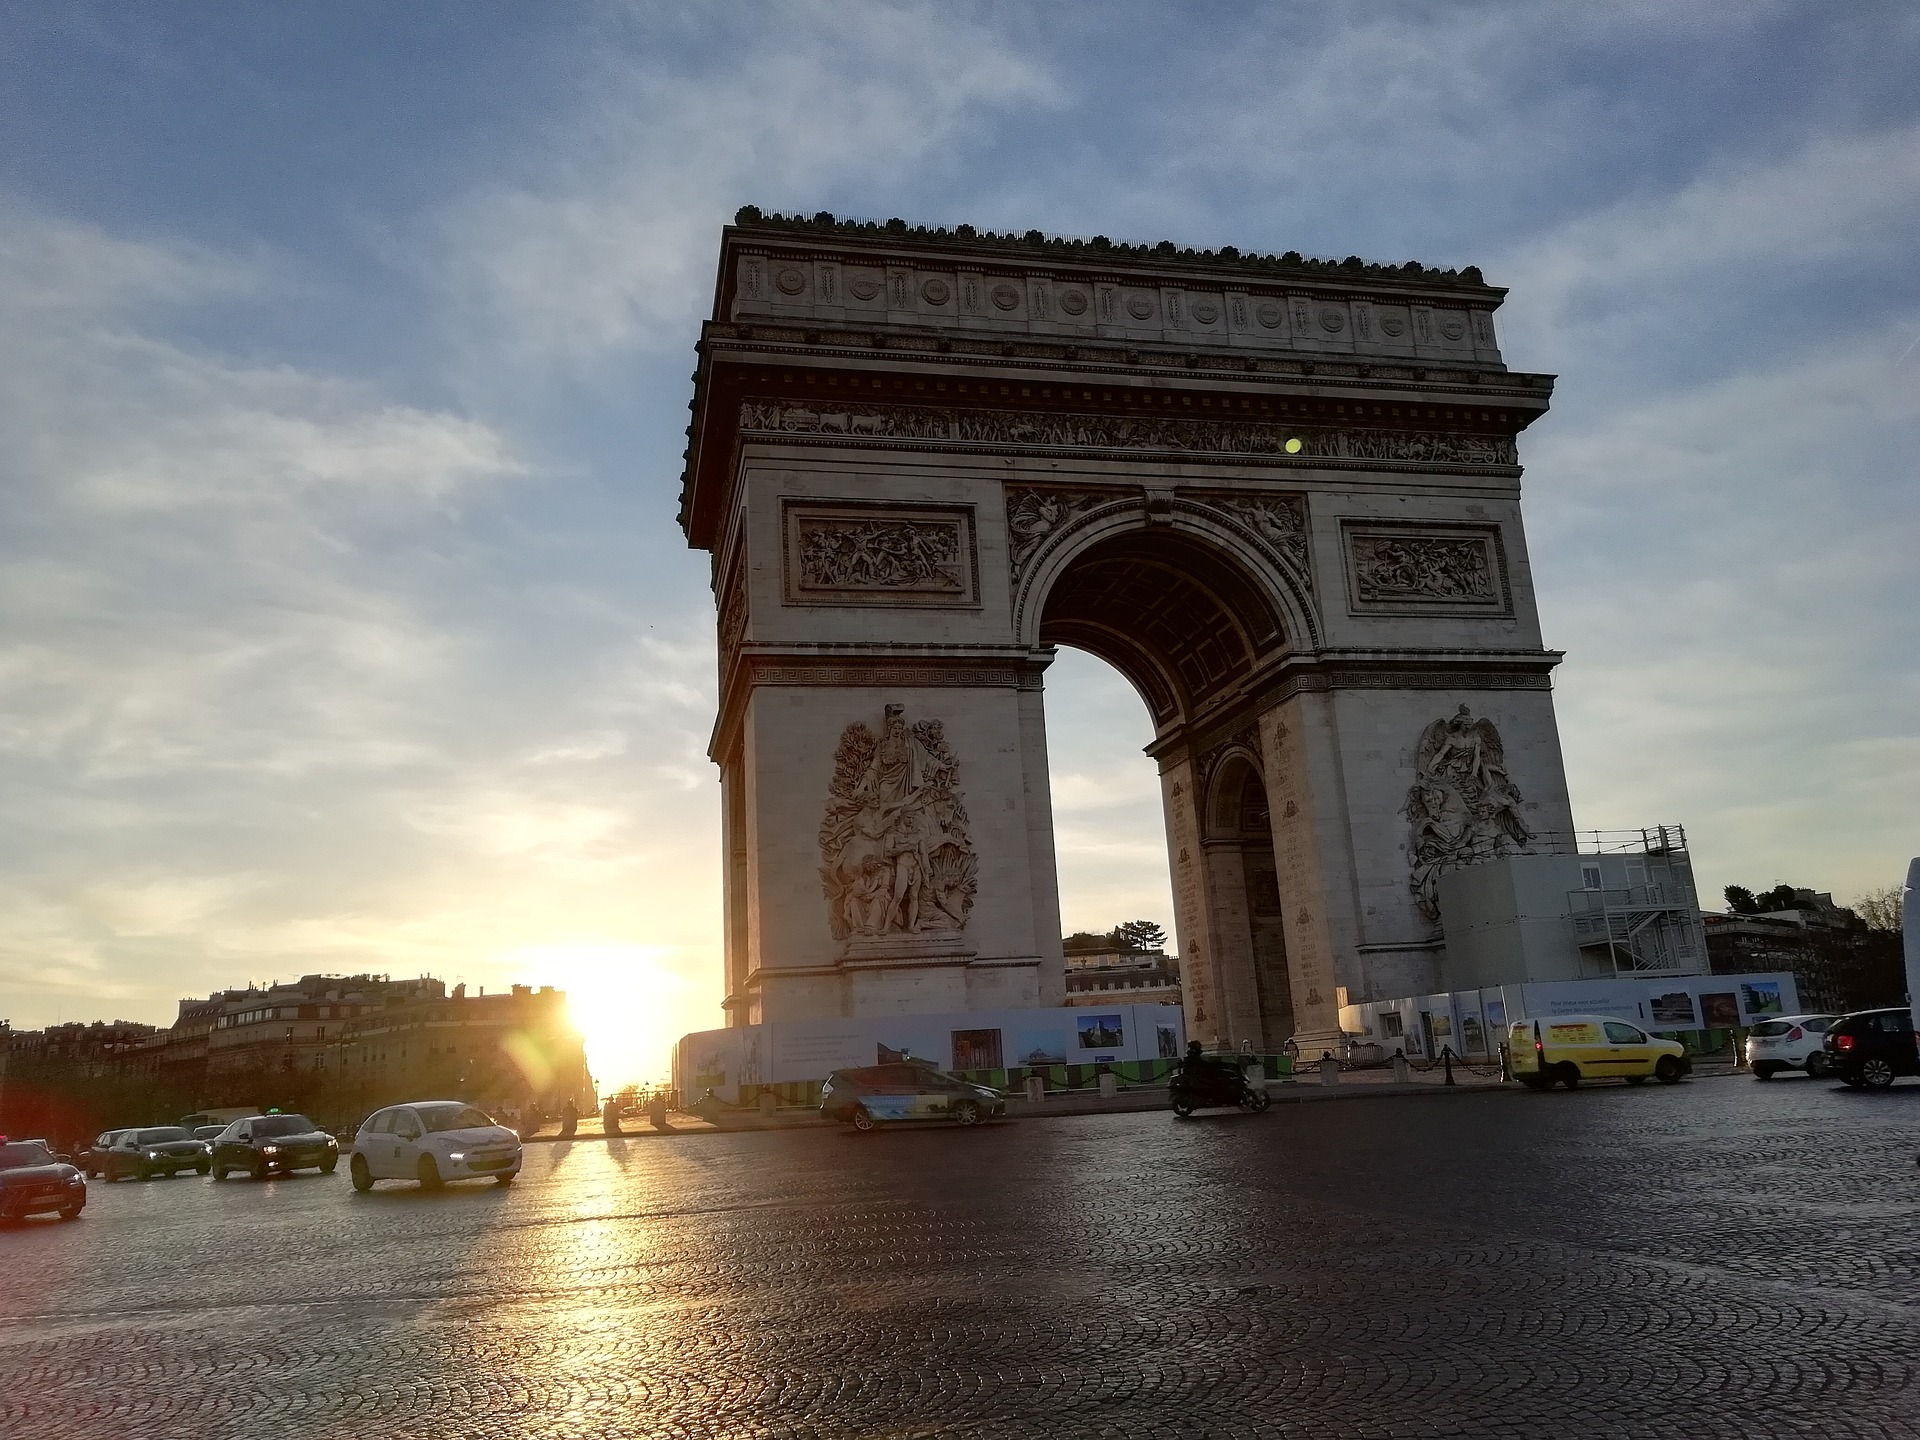 The Place de l'Étoile in Paris